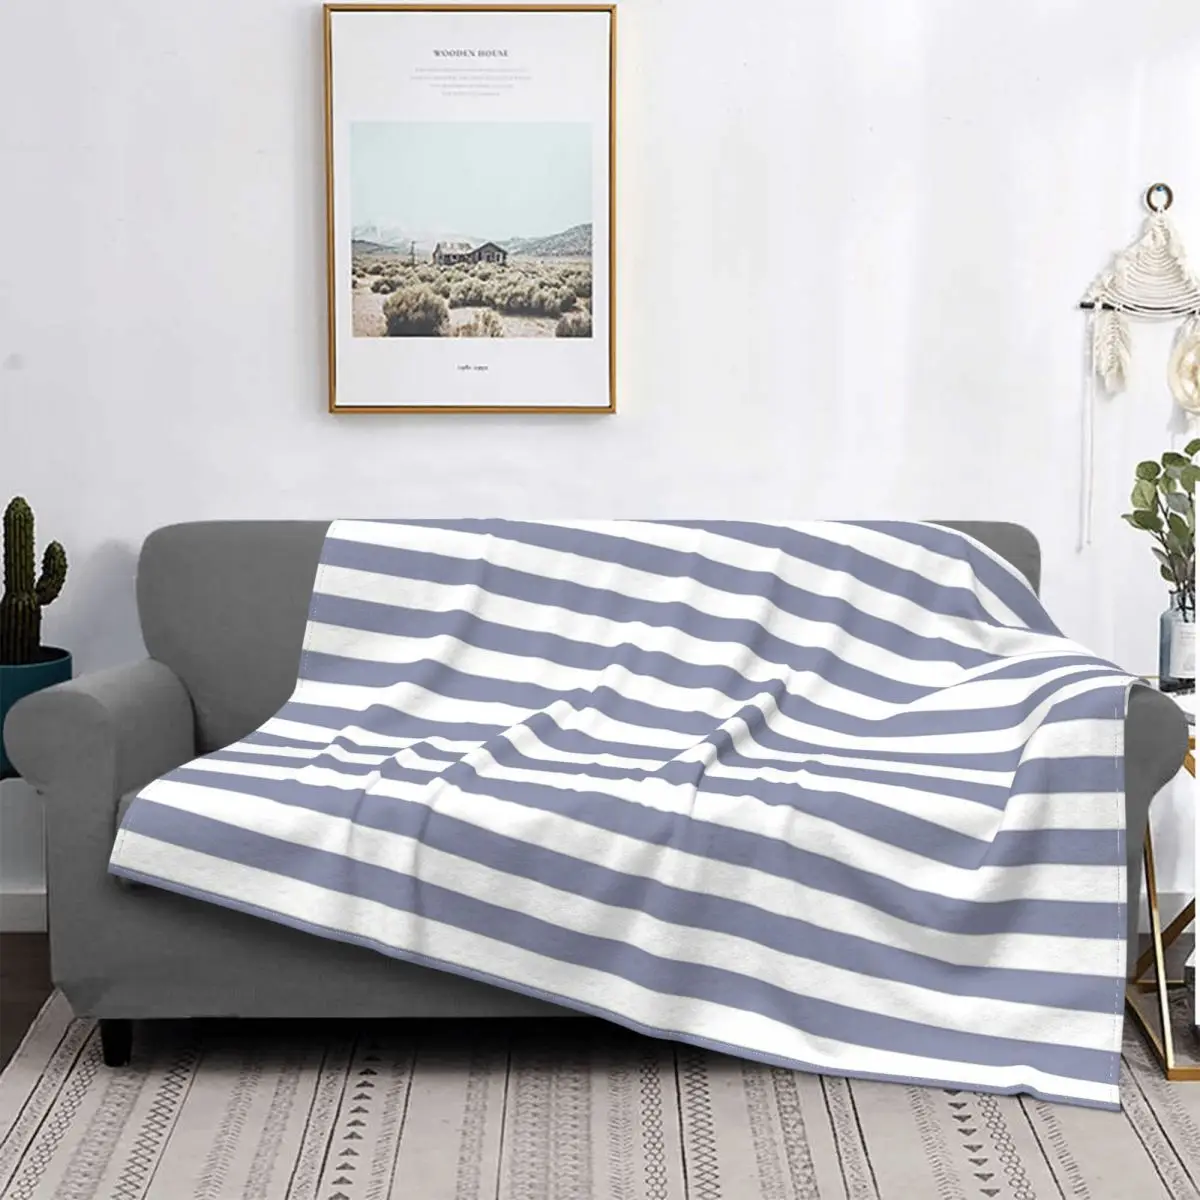 

Крутое Горизонтальное одеяло серого и белого цвета, покрывало для кровати, пляжное одеяло, муслиновое одеяло, покрывала для кровати